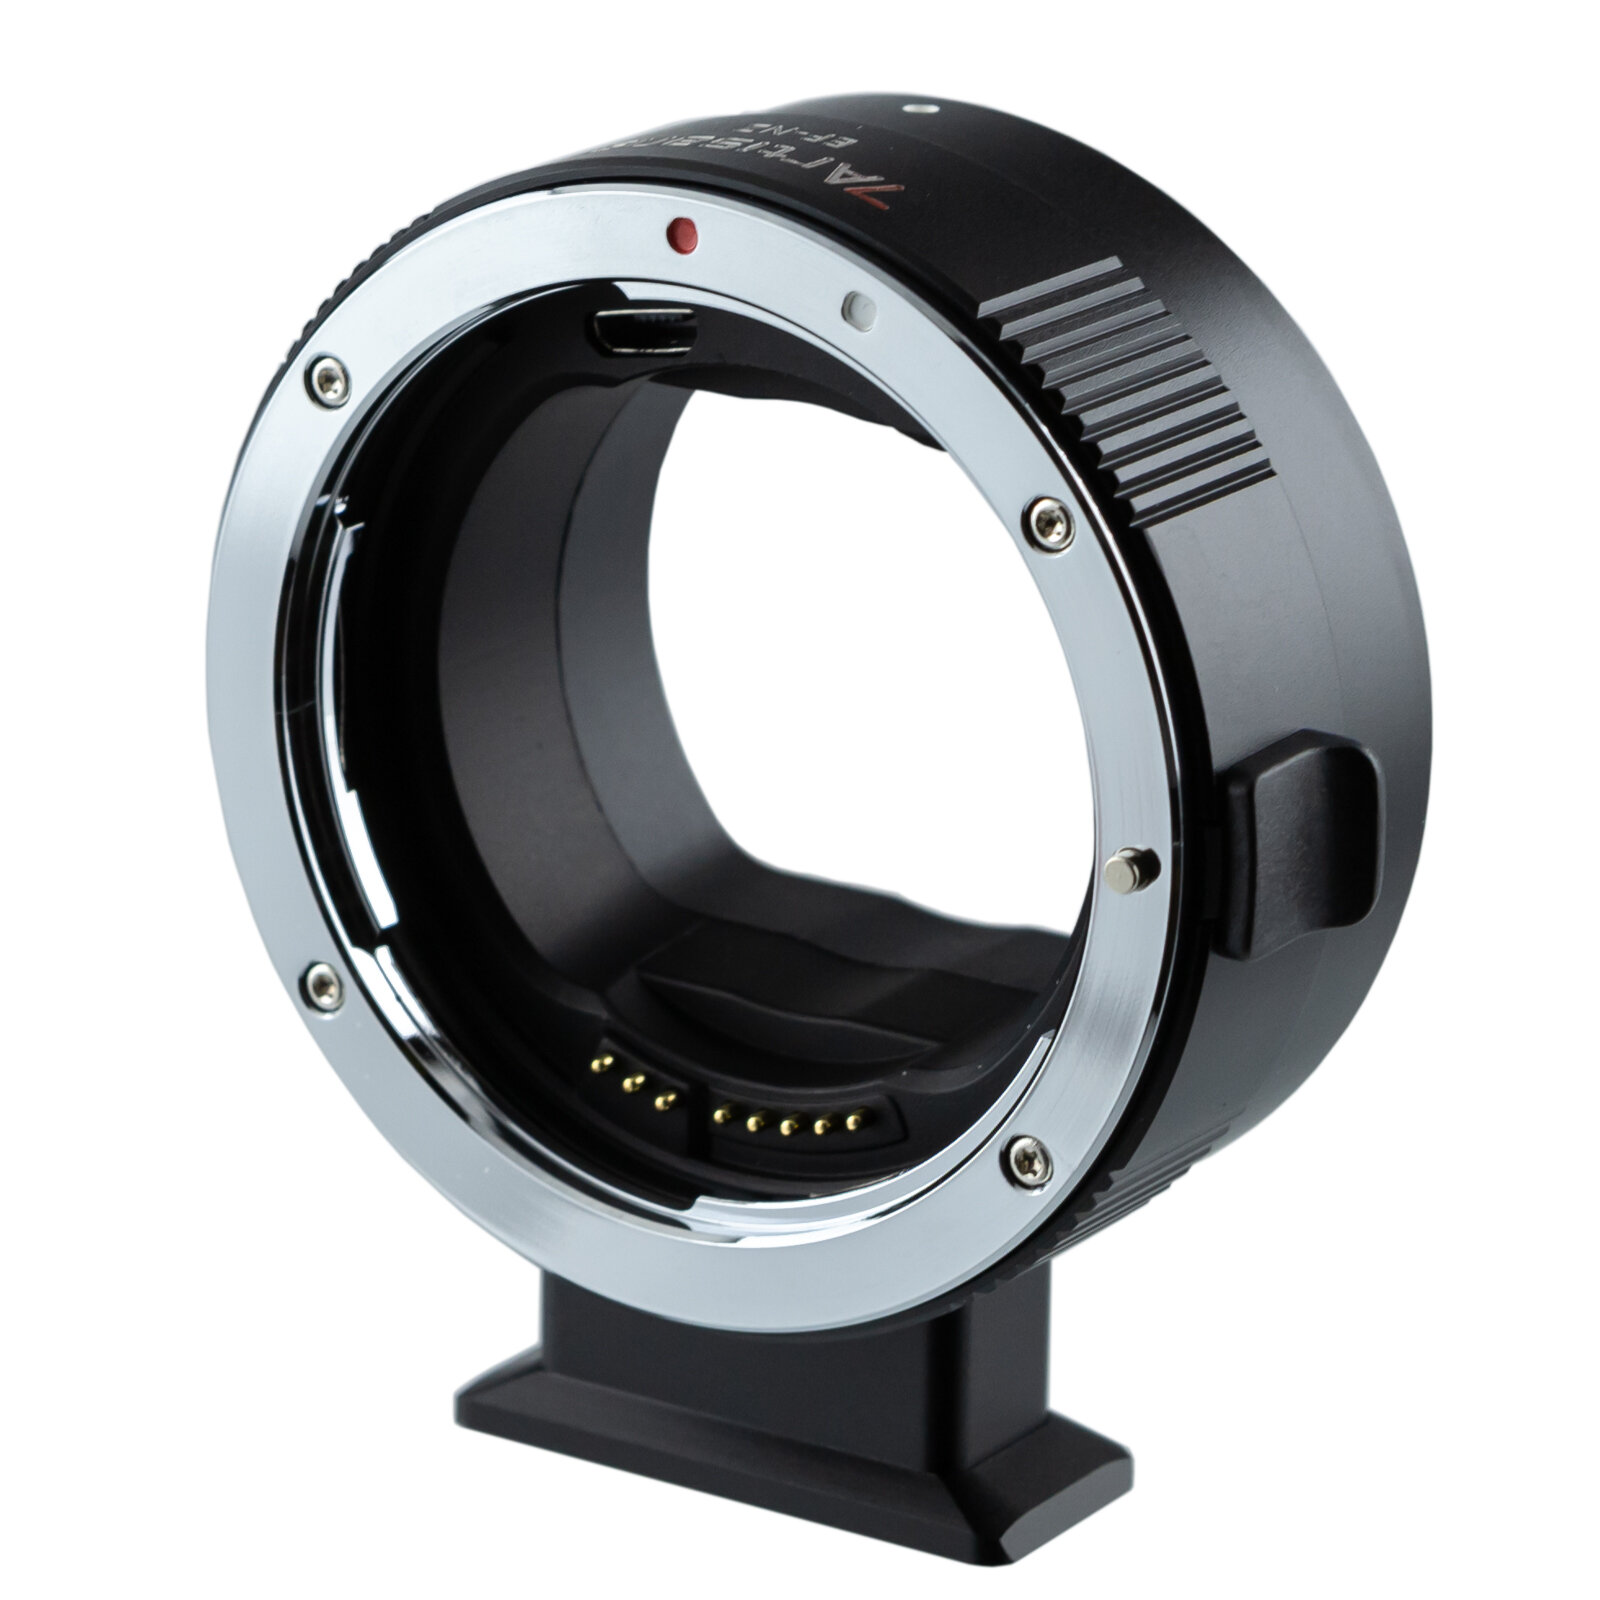 Переходное кольцо 7artisans с байонета Canon EF - Nikon Z с управлением функциями объектива